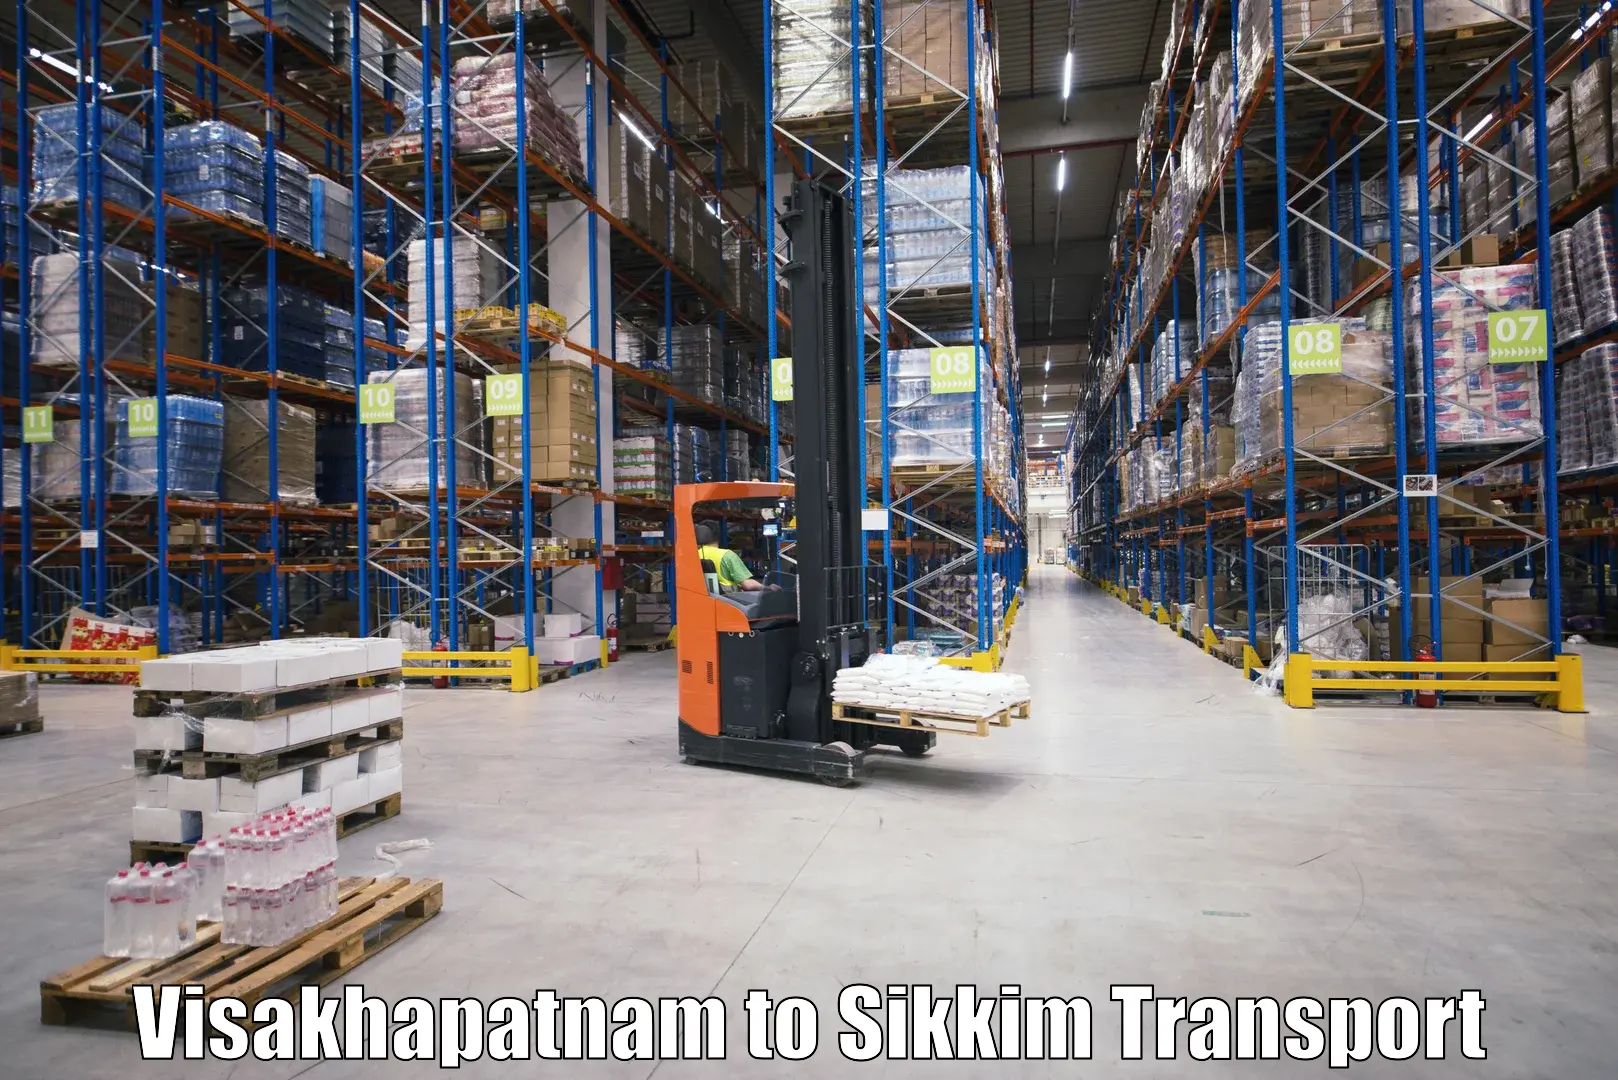 Interstate transport services Visakhapatnam to Mangan